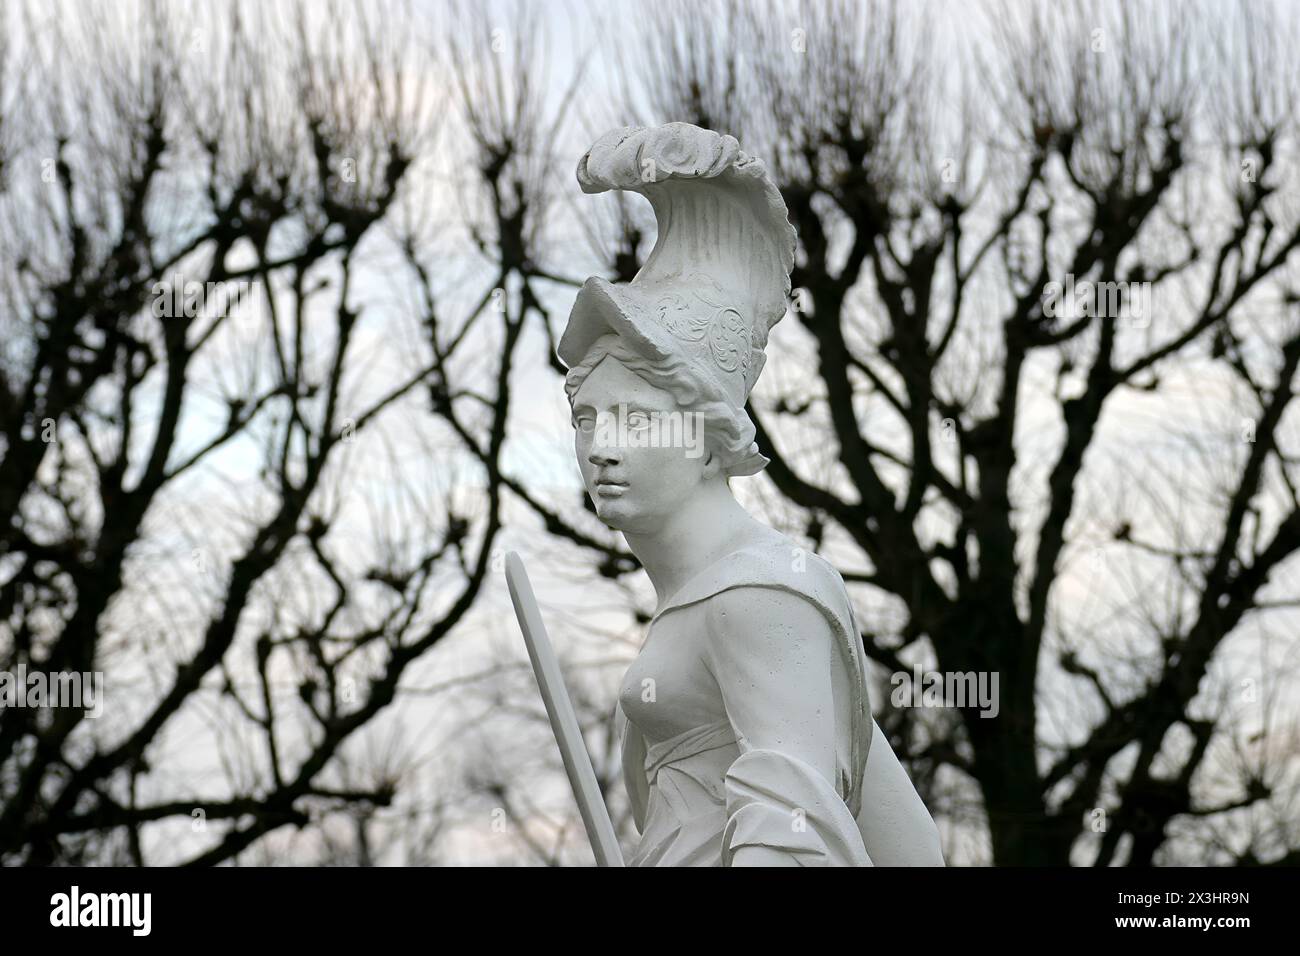 Sculpture grecque, jardin Grosser Garten dans les jardins Herrenhaeuser Gaerten, Herrenhausen, Hanovre, basse-Saxe, Allemagne, Europe Banque D'Images